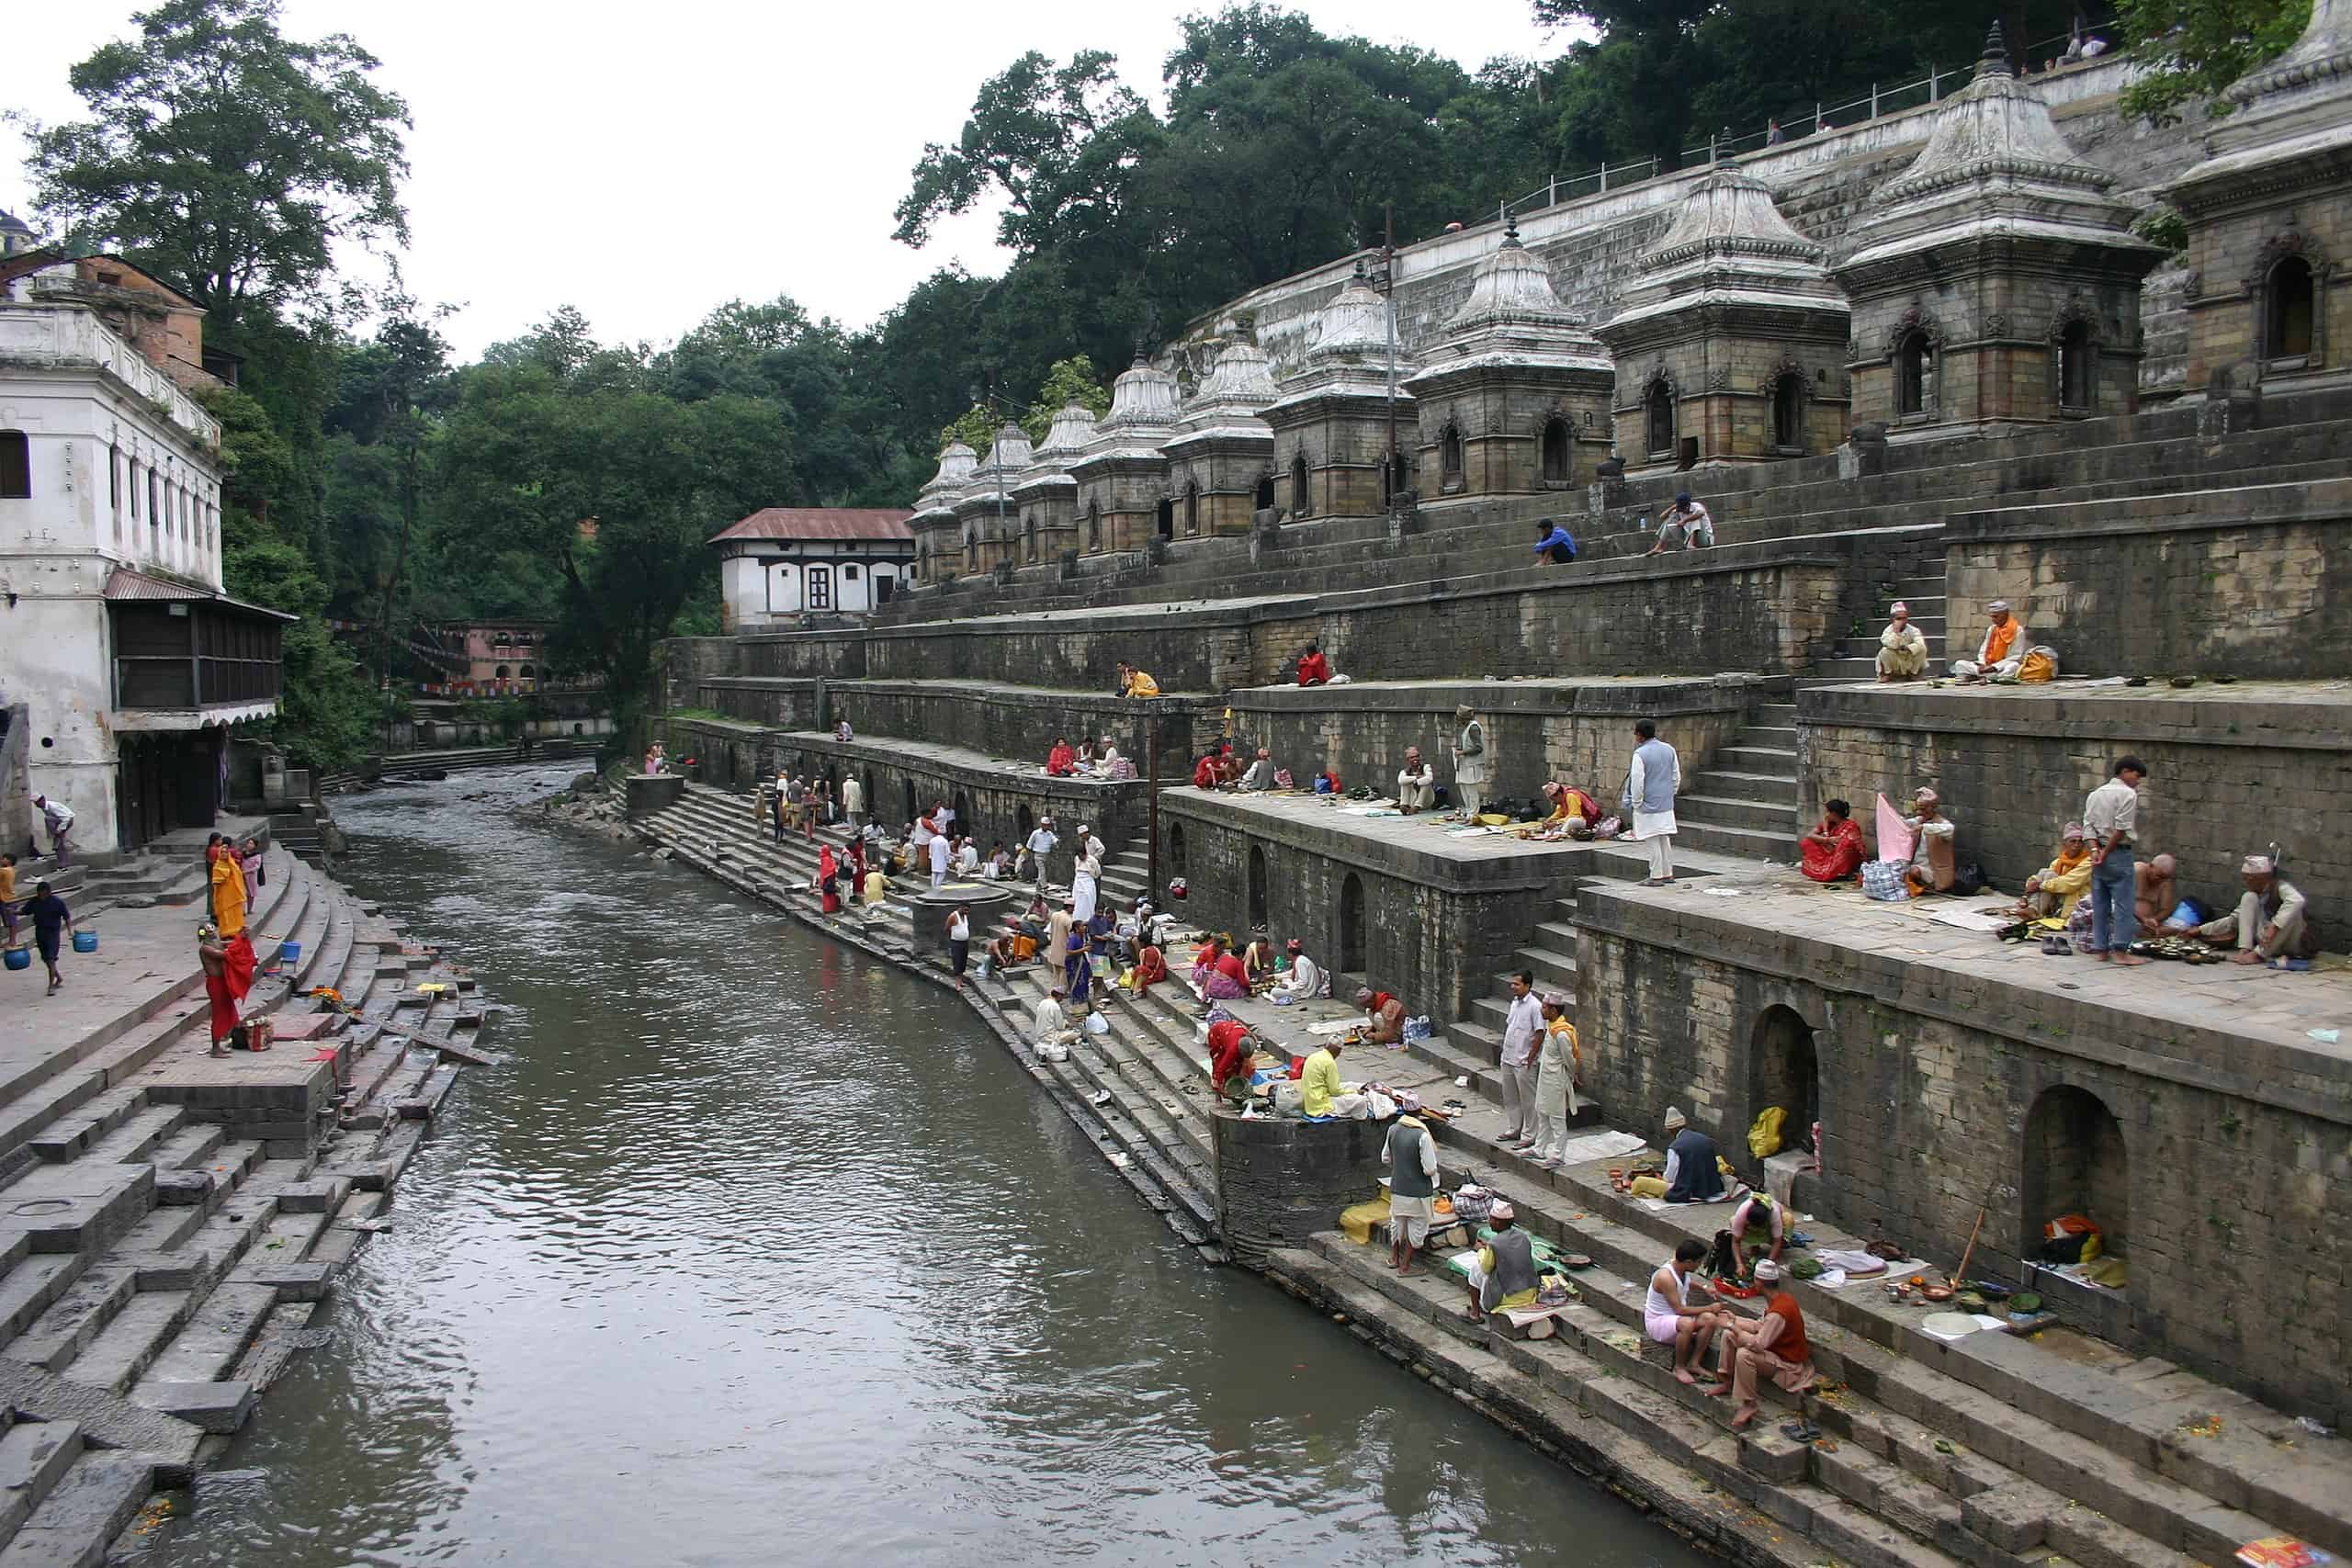 Arya Ghats (links), Pandra Shivalaya Komplex (rechts) – 15 Schreine, die zu Ehren verstorbener Persönlichkeiten errichtet wurden